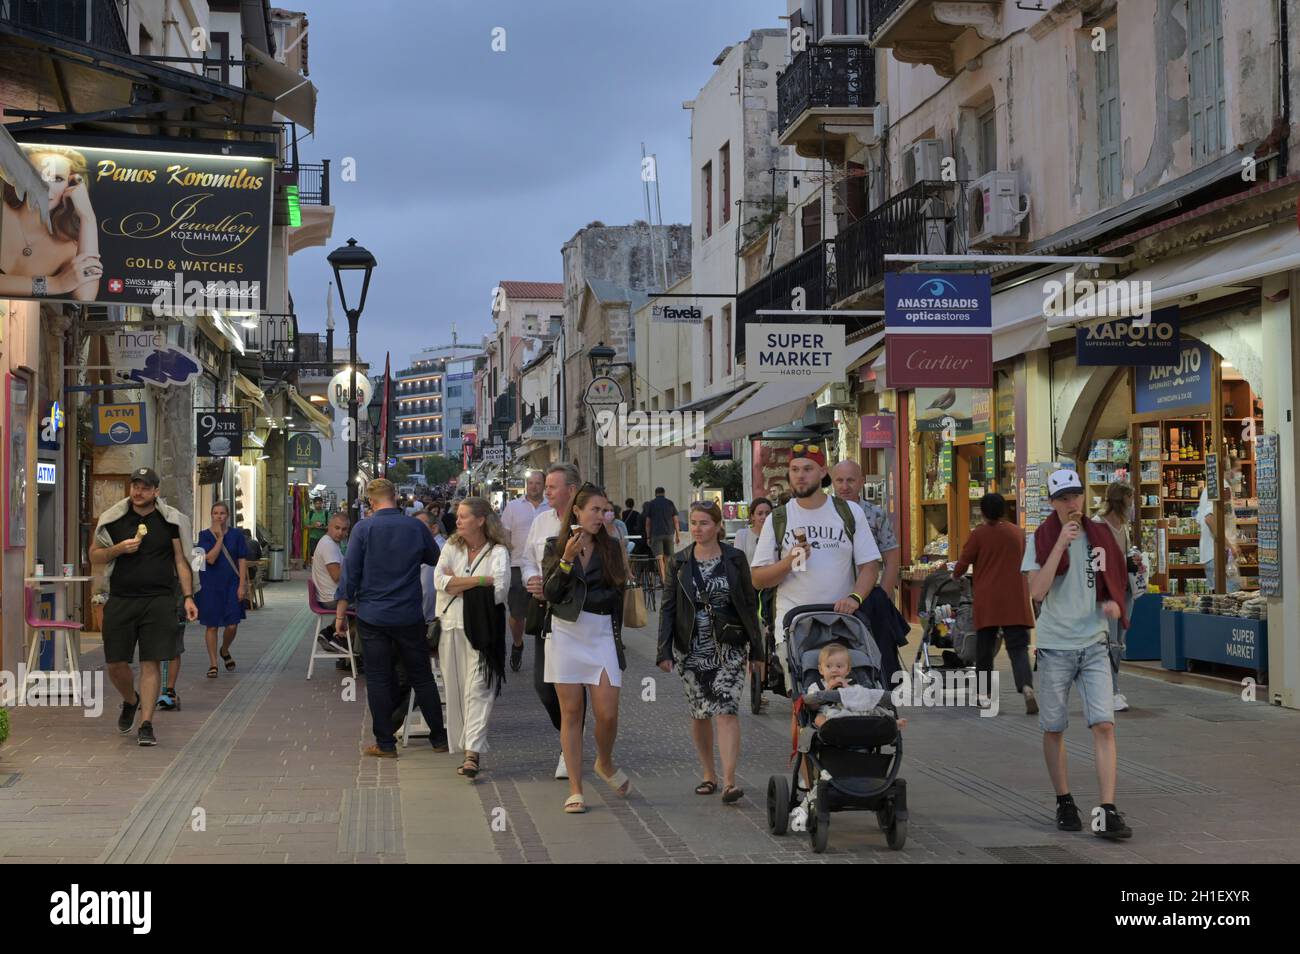 Touristen, Chalidon-Straße, Evraiki-Viertel, Chania, Kreta, Griechenland Stock Photo